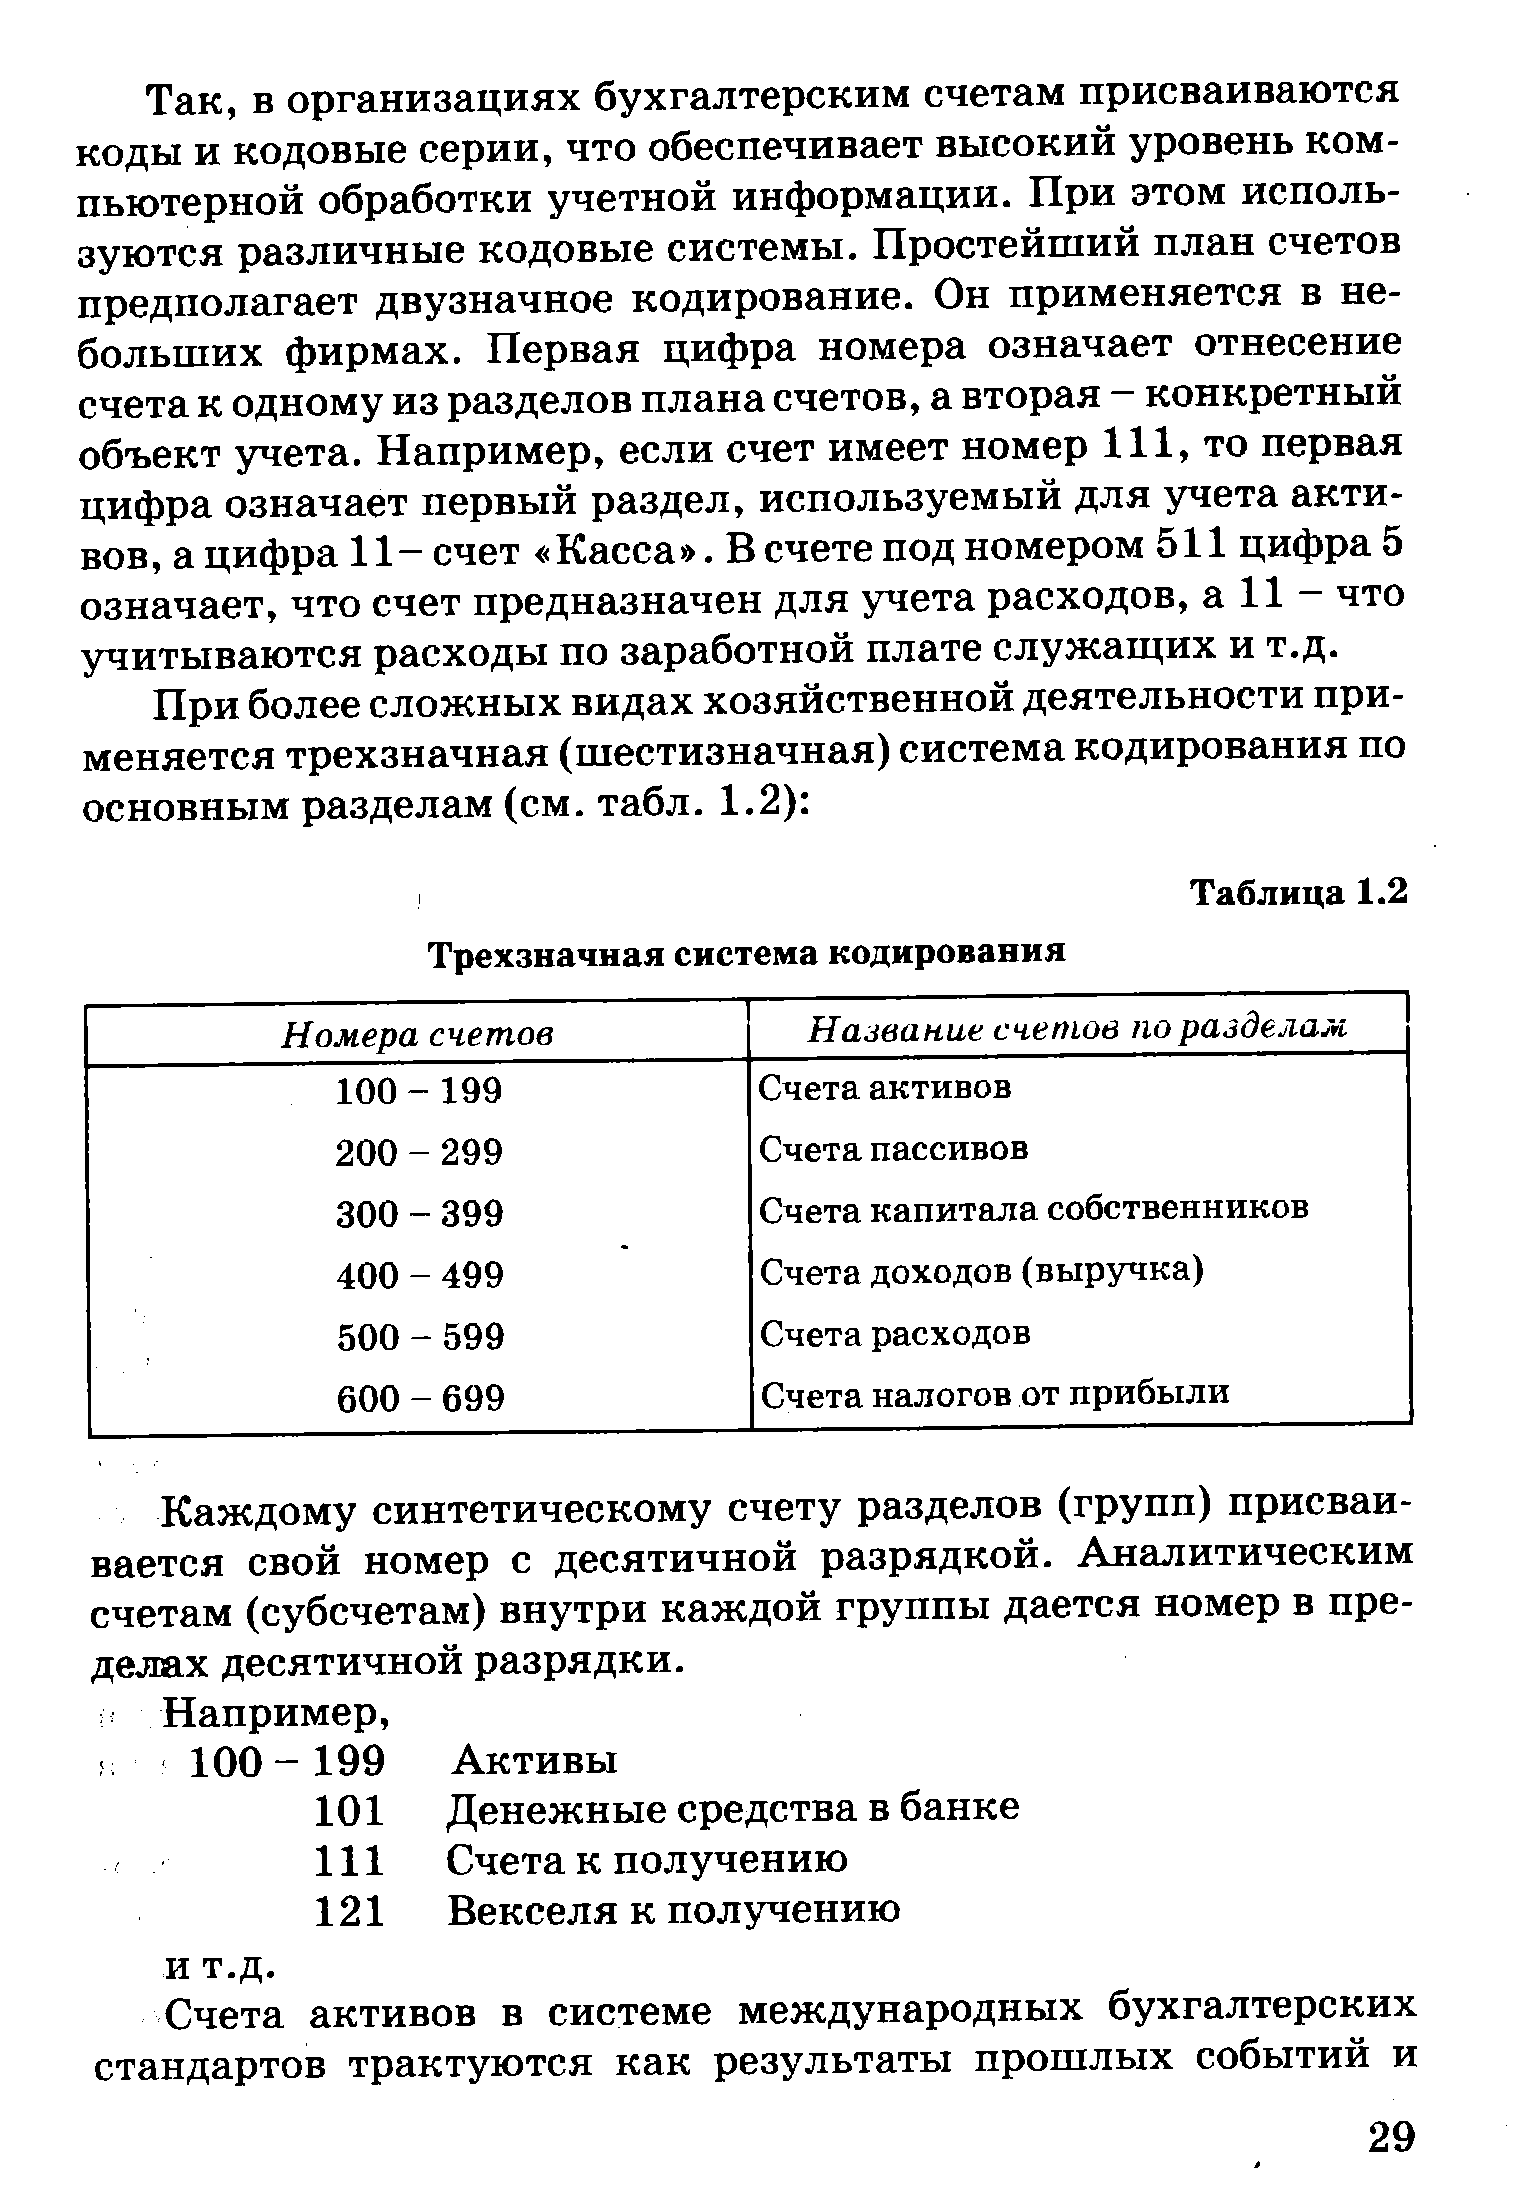 Таблица 1.2 Трехзначная система кодирования
